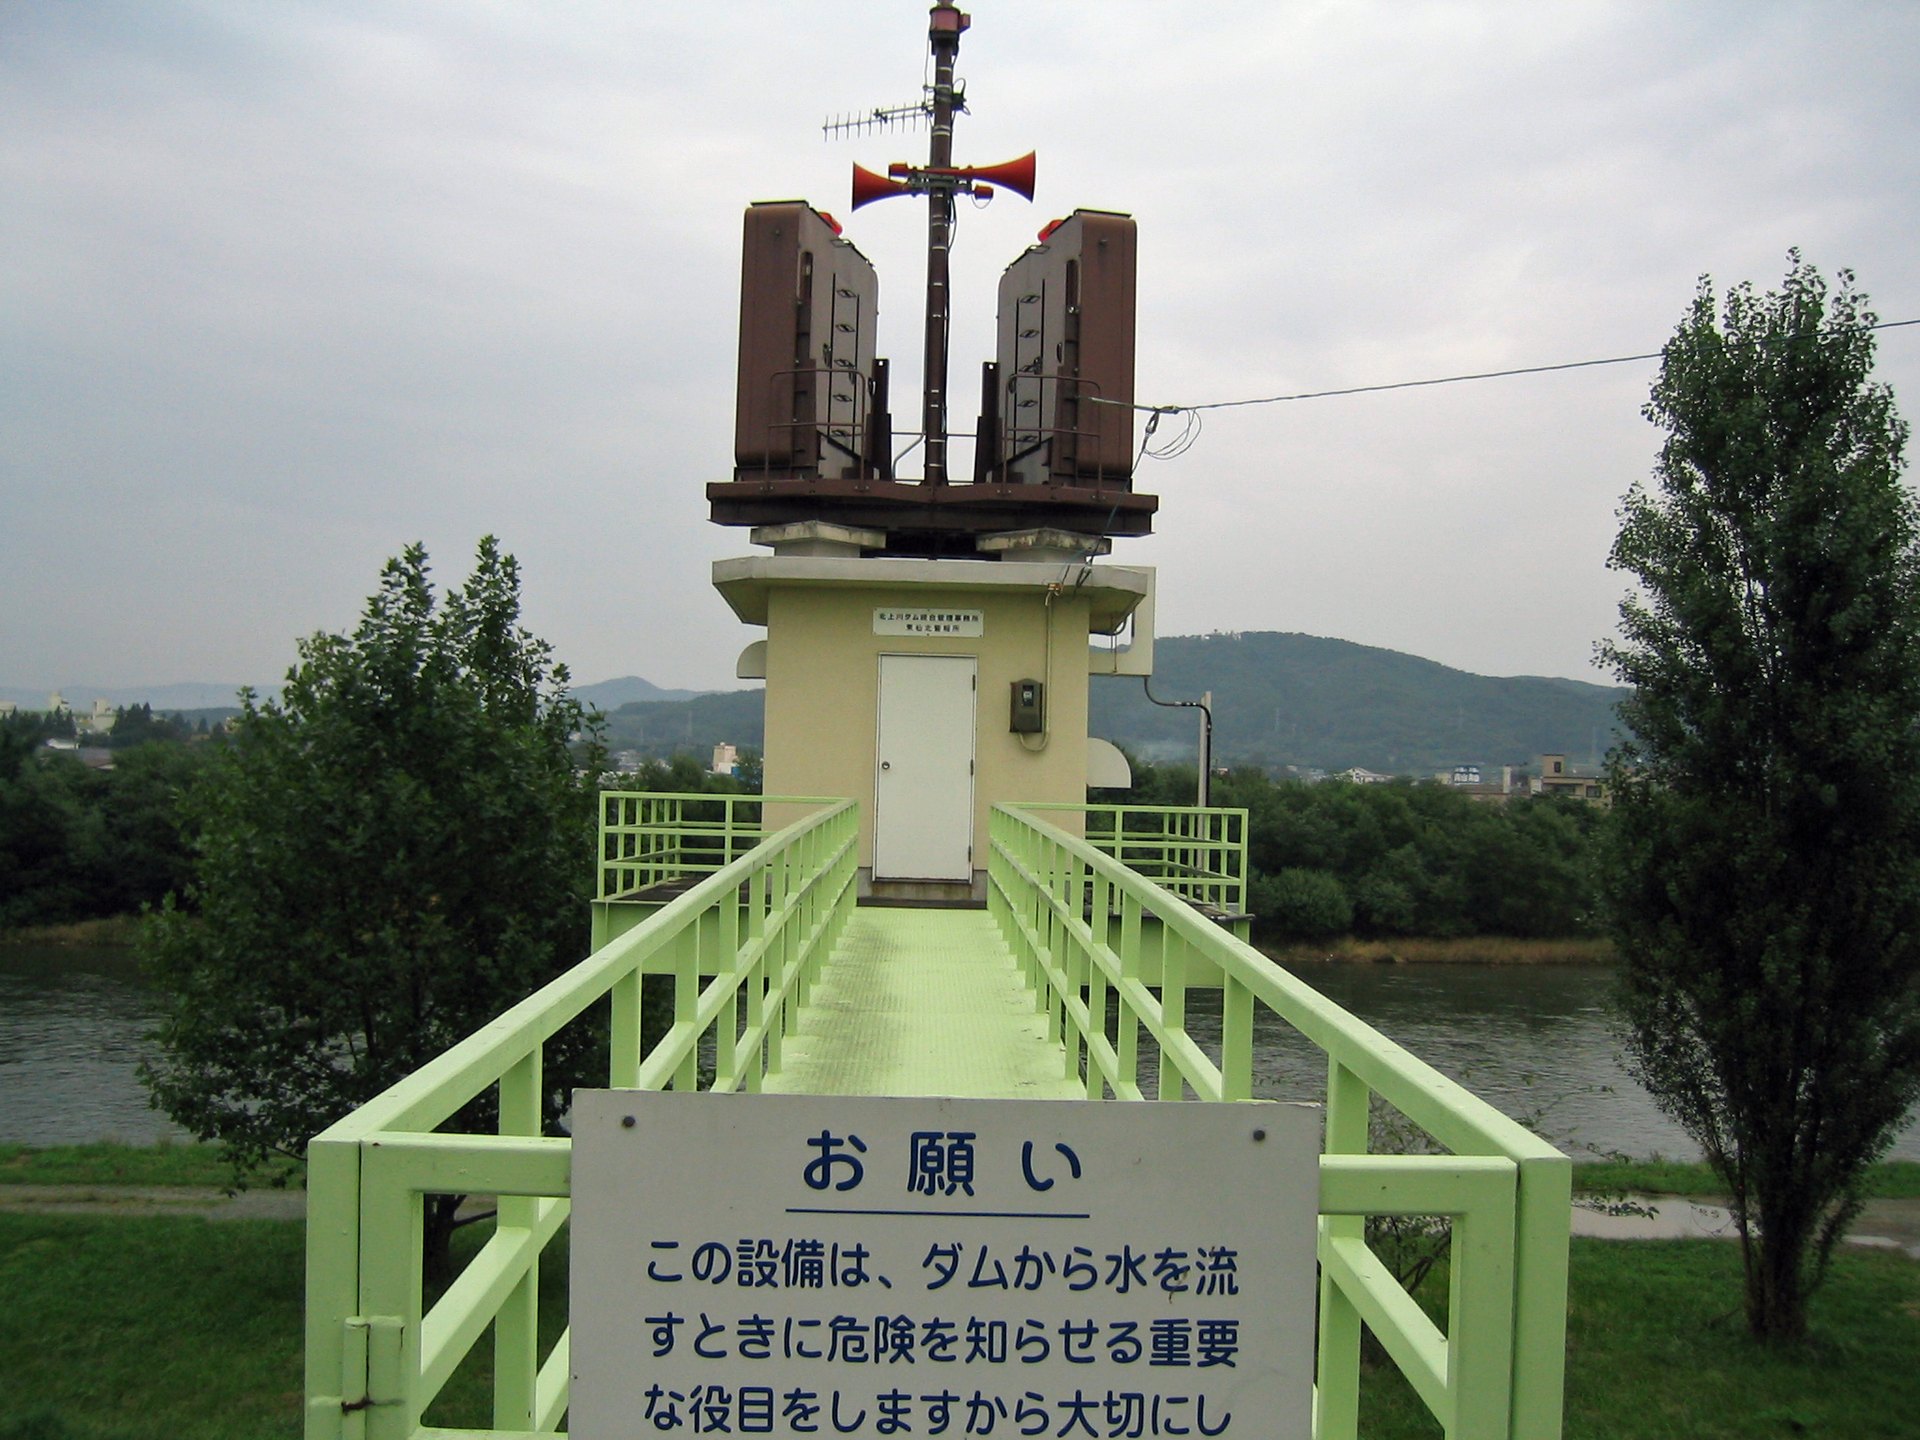 ダム放水警報機